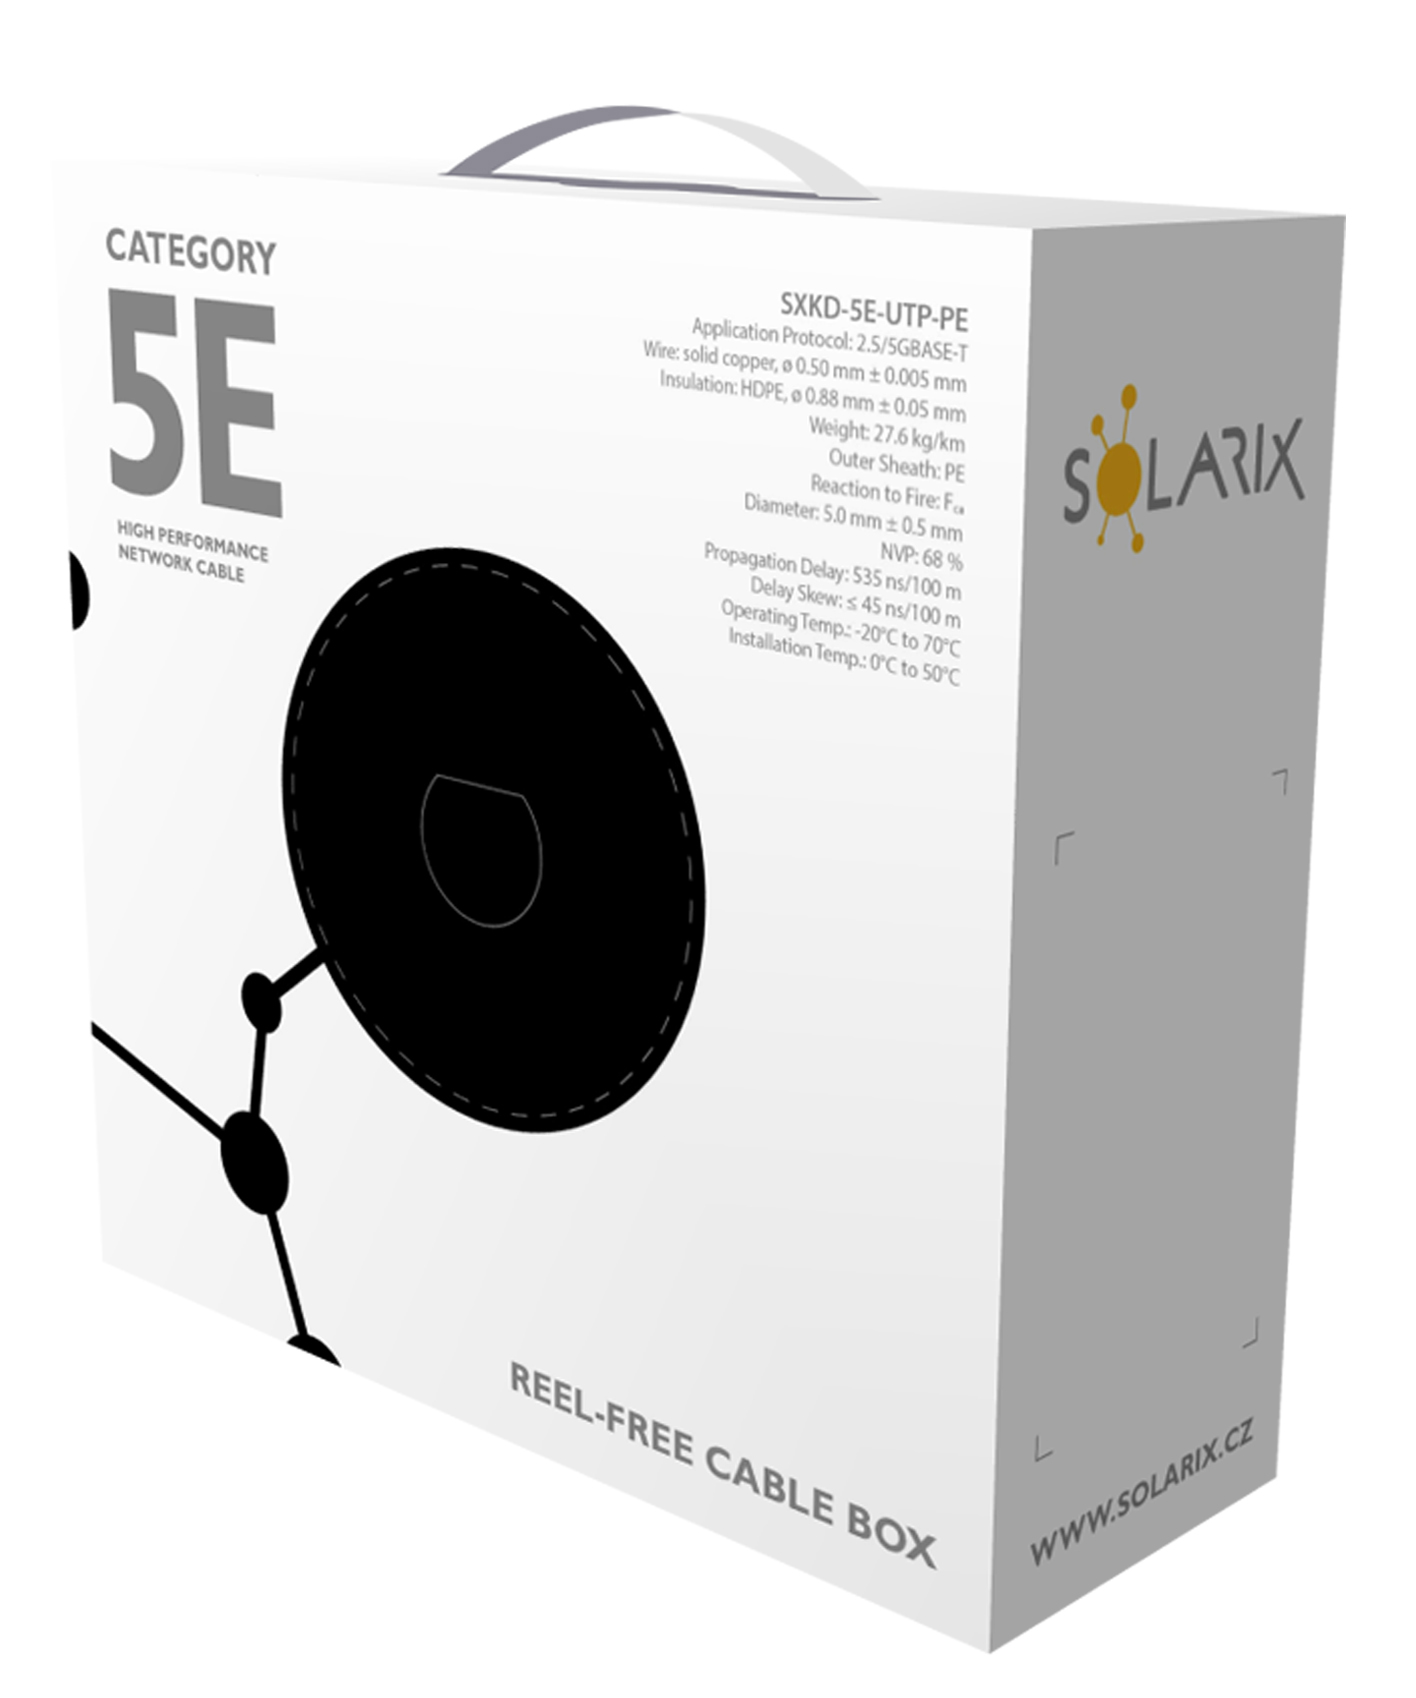 Instalační kabel Solarix CAT5E UTP PE Fca venkovní 100m/ box SXKD-5E-UTP-PE 